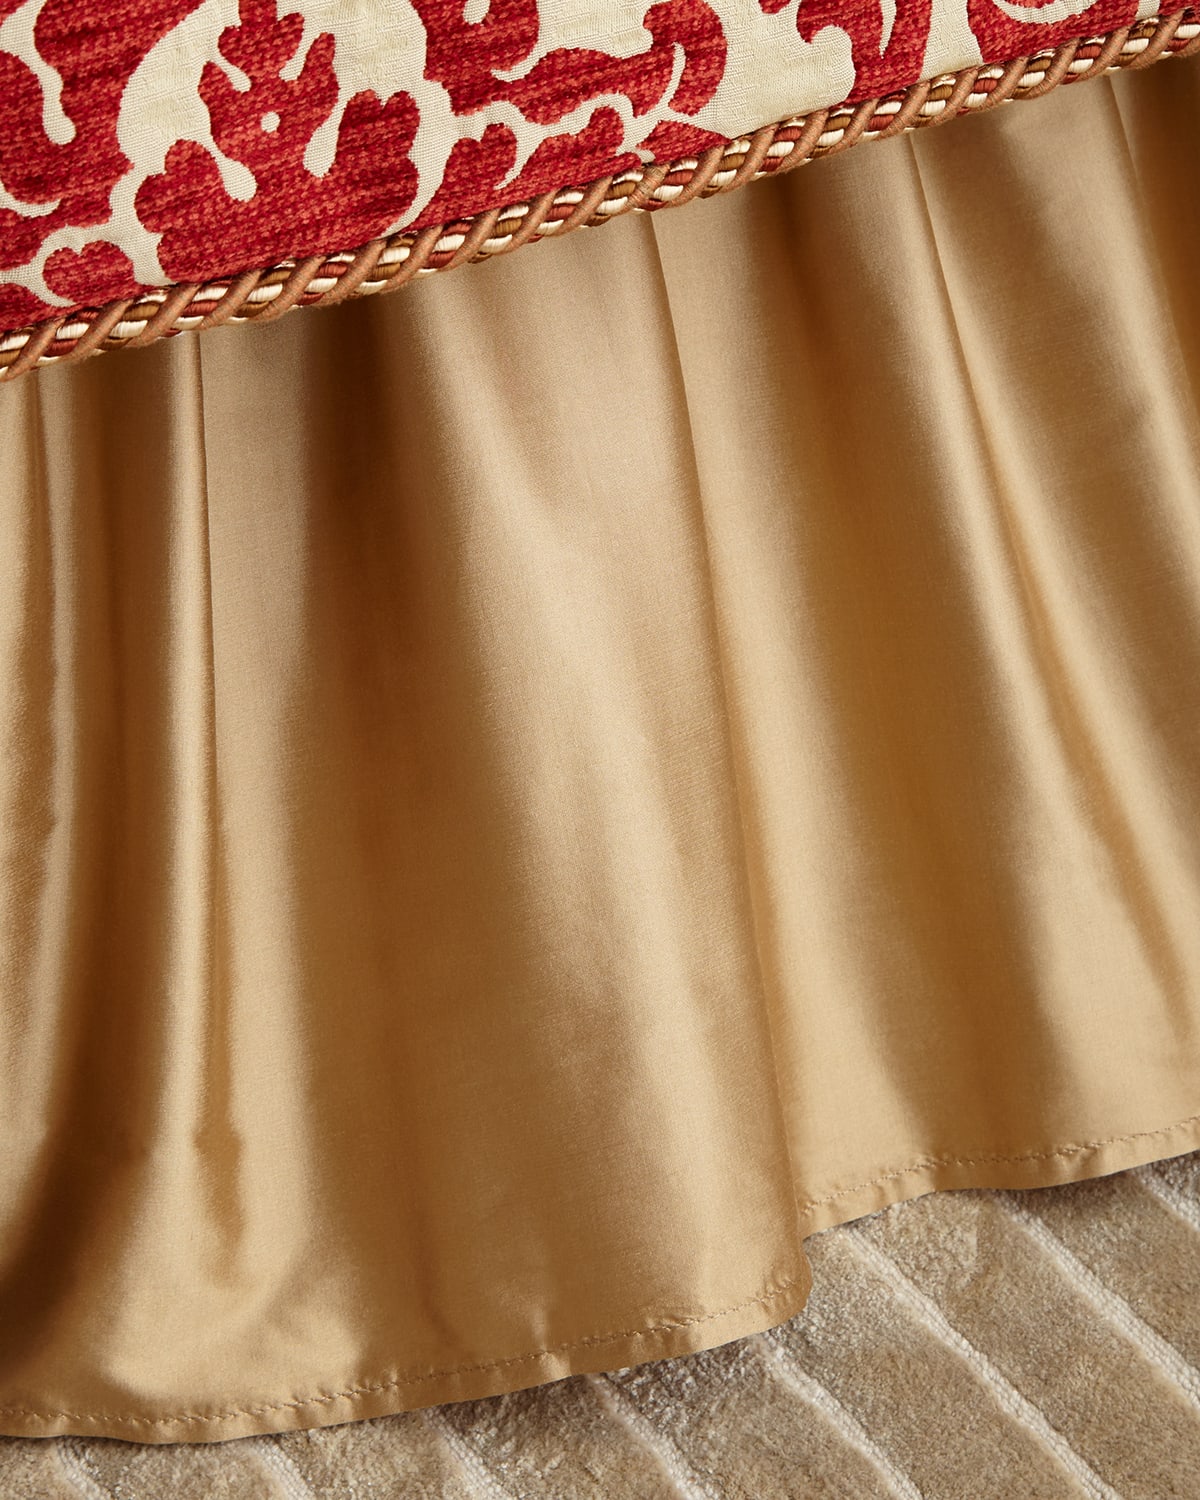 Image Austin Horn Collection Arabesque King Dust Skirt